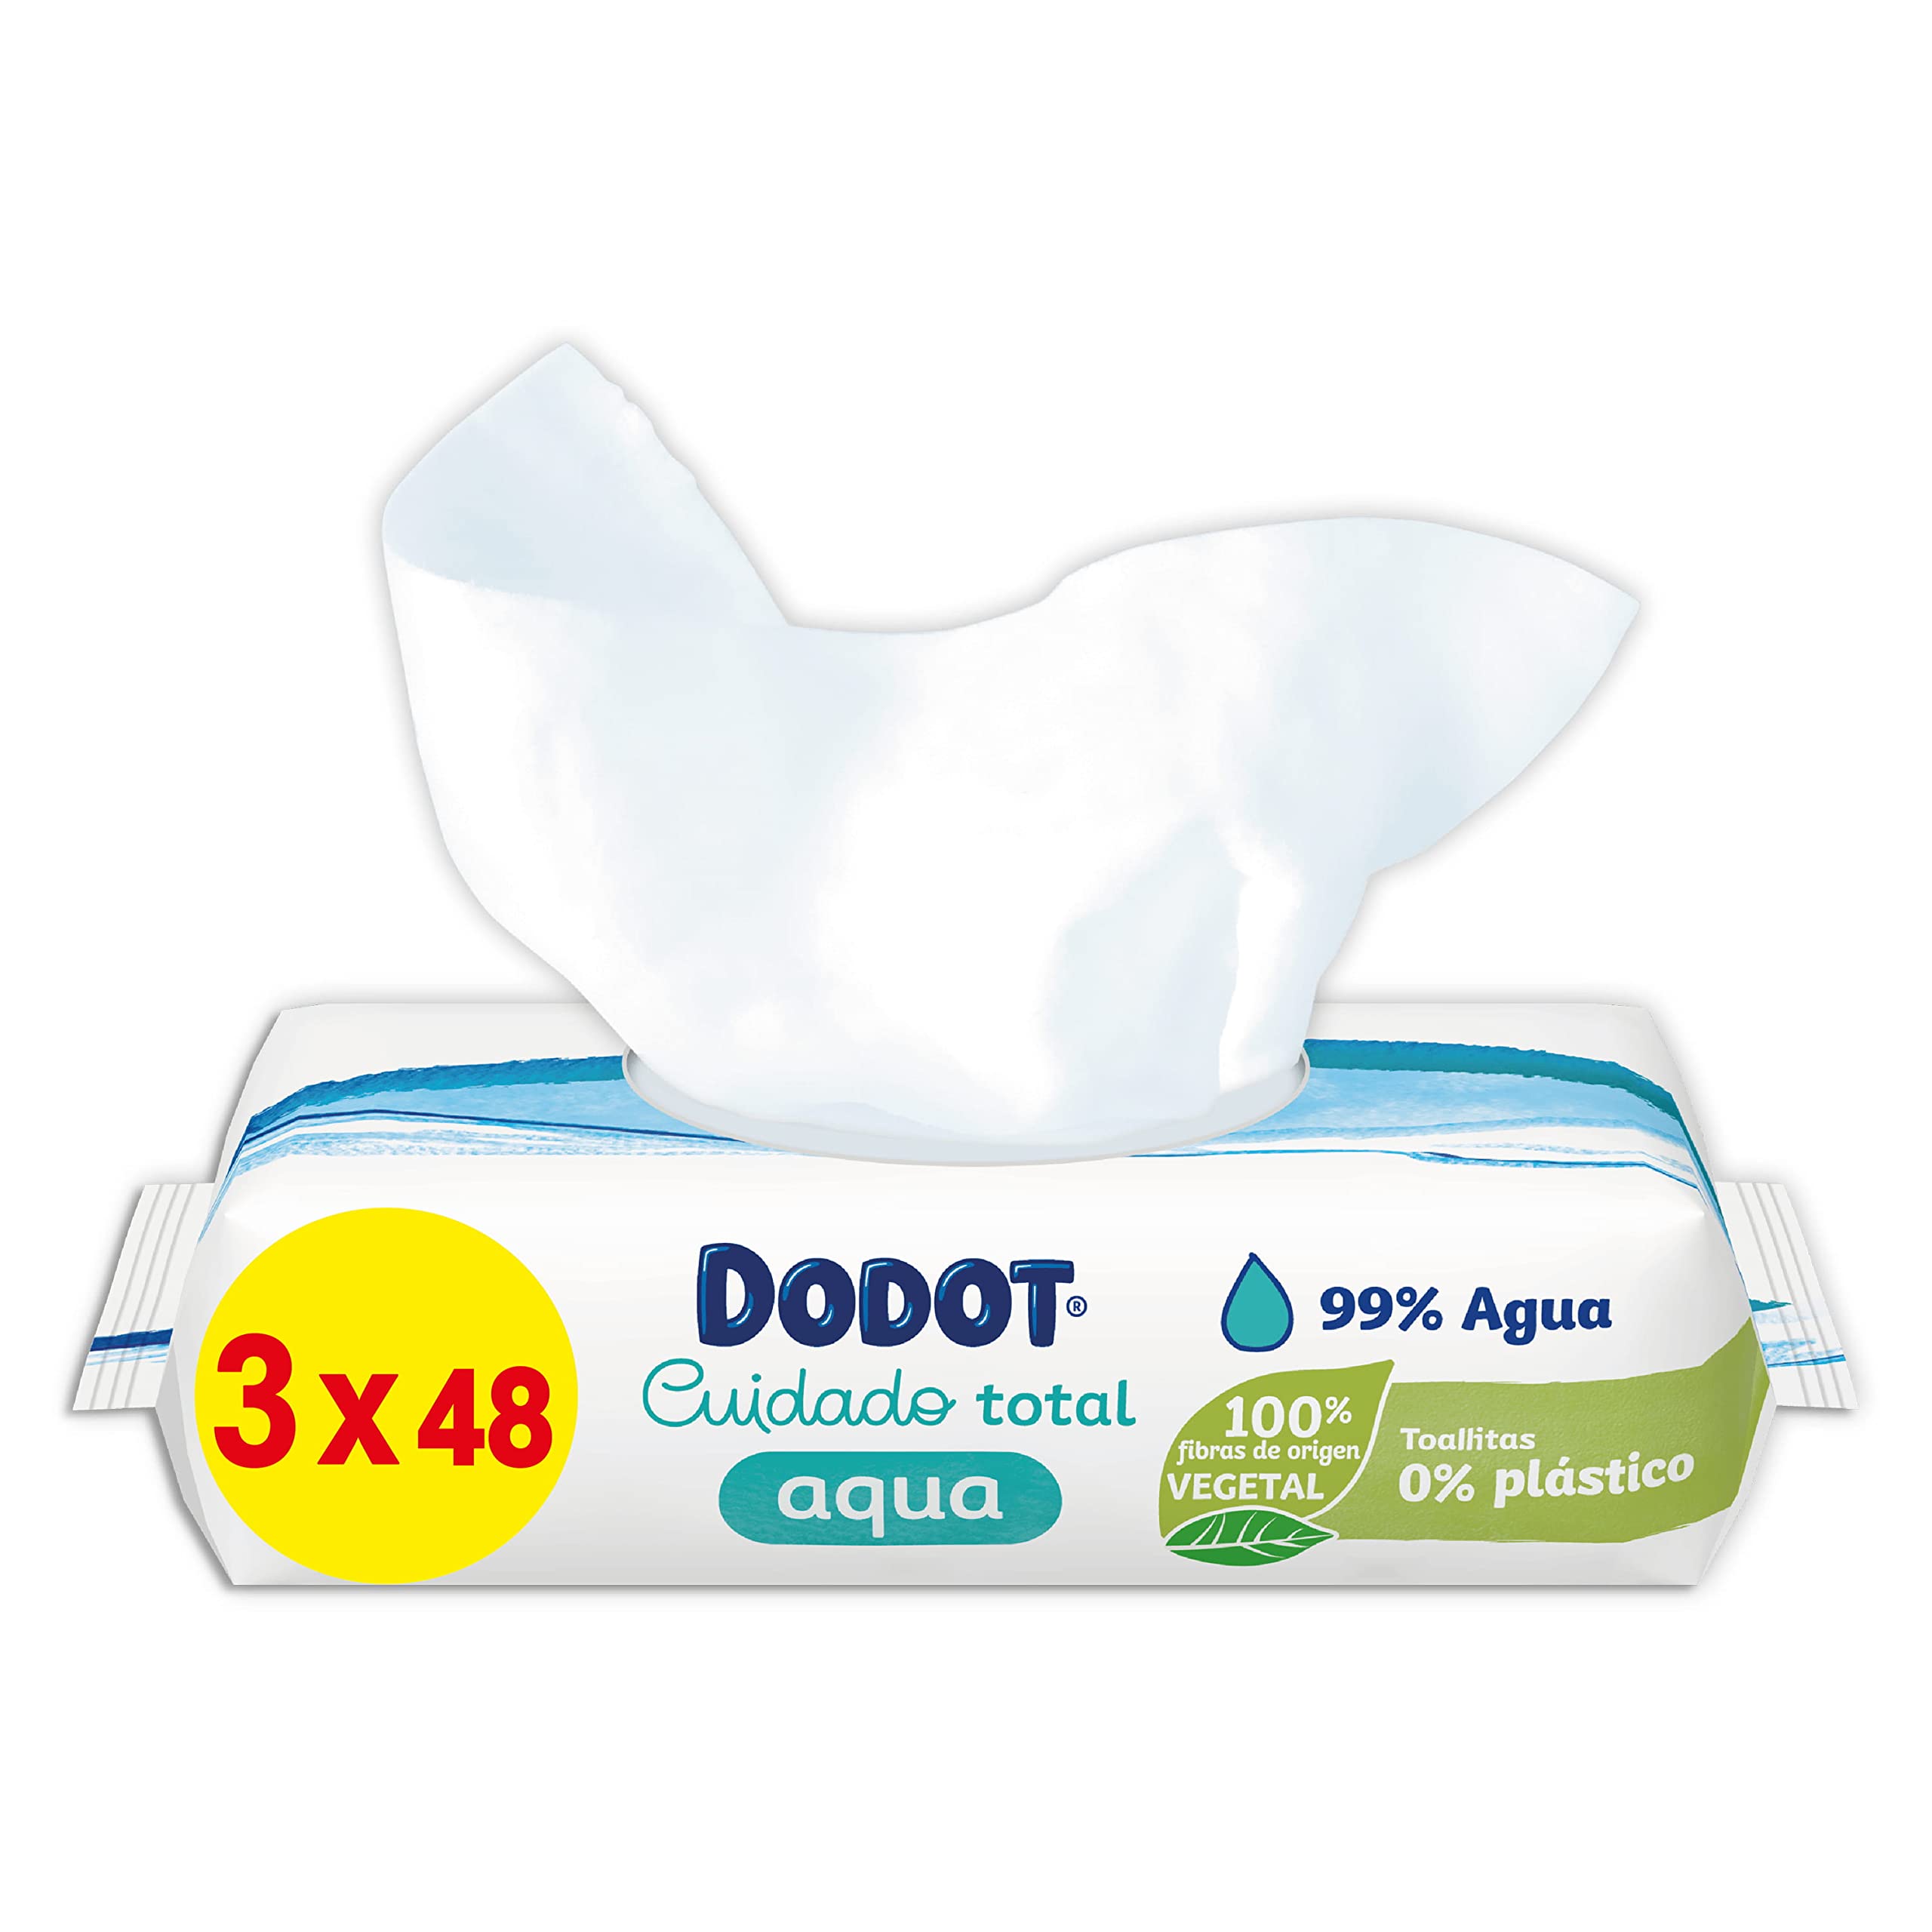 Dodot Aqua 3 Packungen à 48 Stück = 144 Tücher, hergestellt mit 99% Wasser, für eine schonende Reinigung